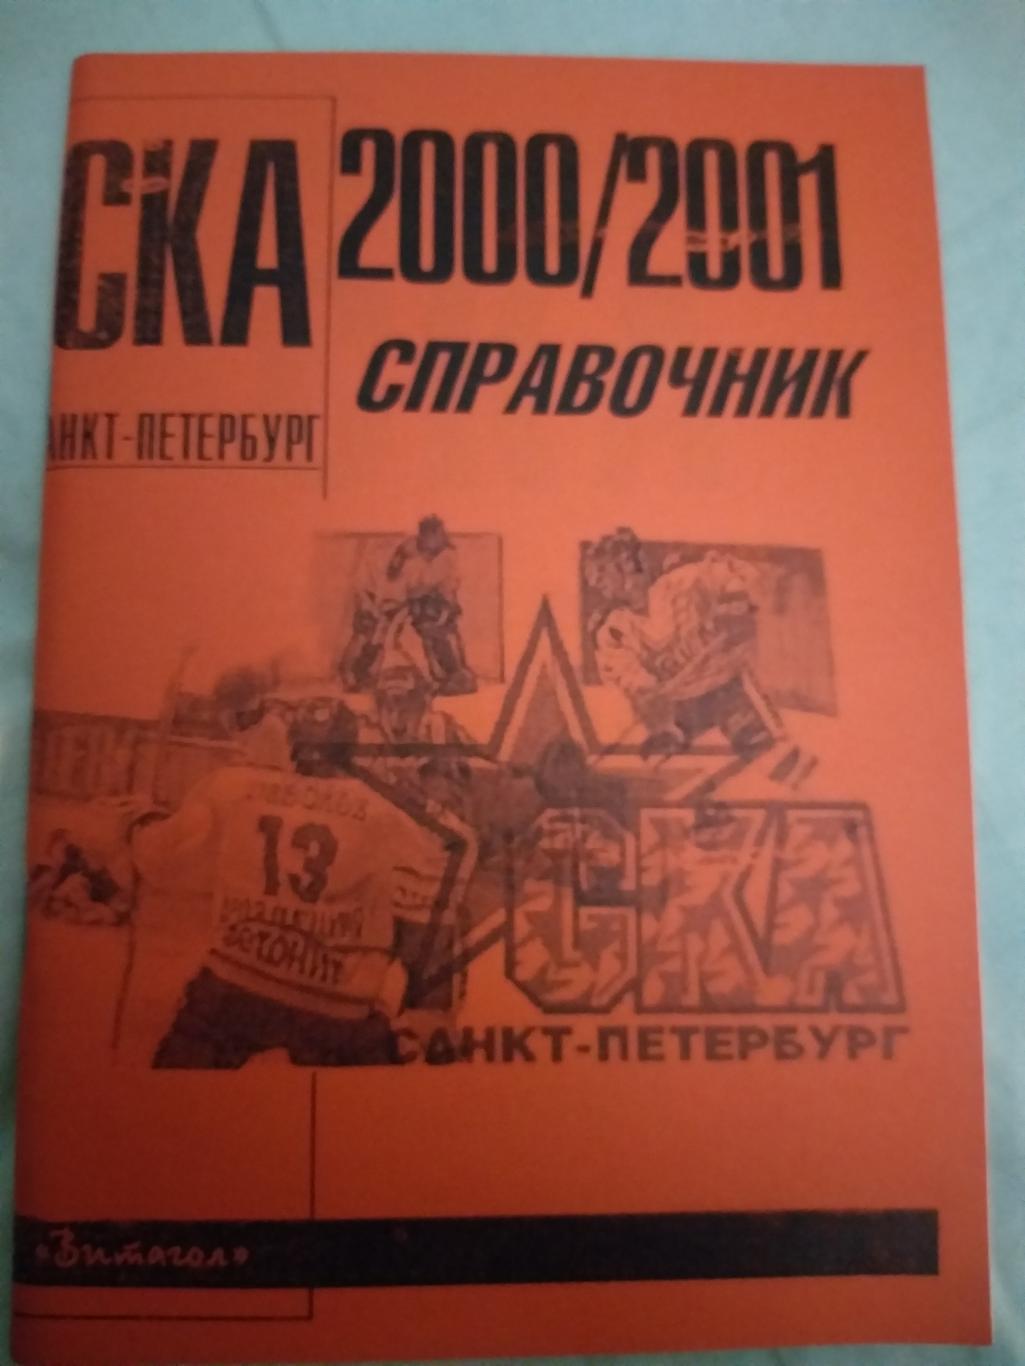 Справочник СКА 2000/2001 Санкт-Петербург